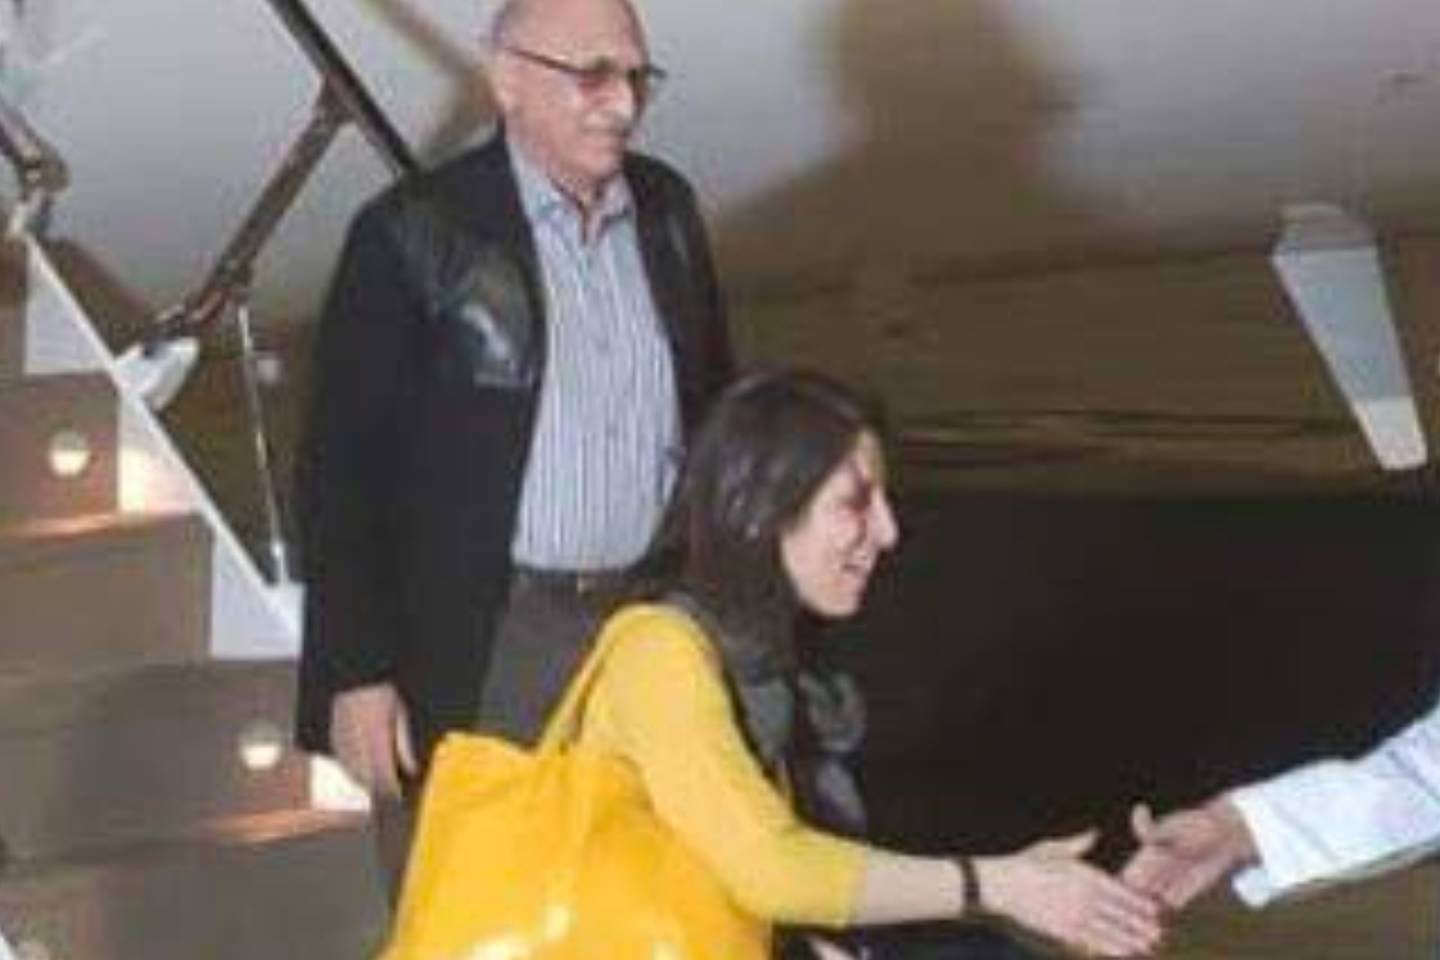 Detained British-Iranians Nazanin Zaghari-Ratcliffe and Anoosheh Ashoori released by Iran